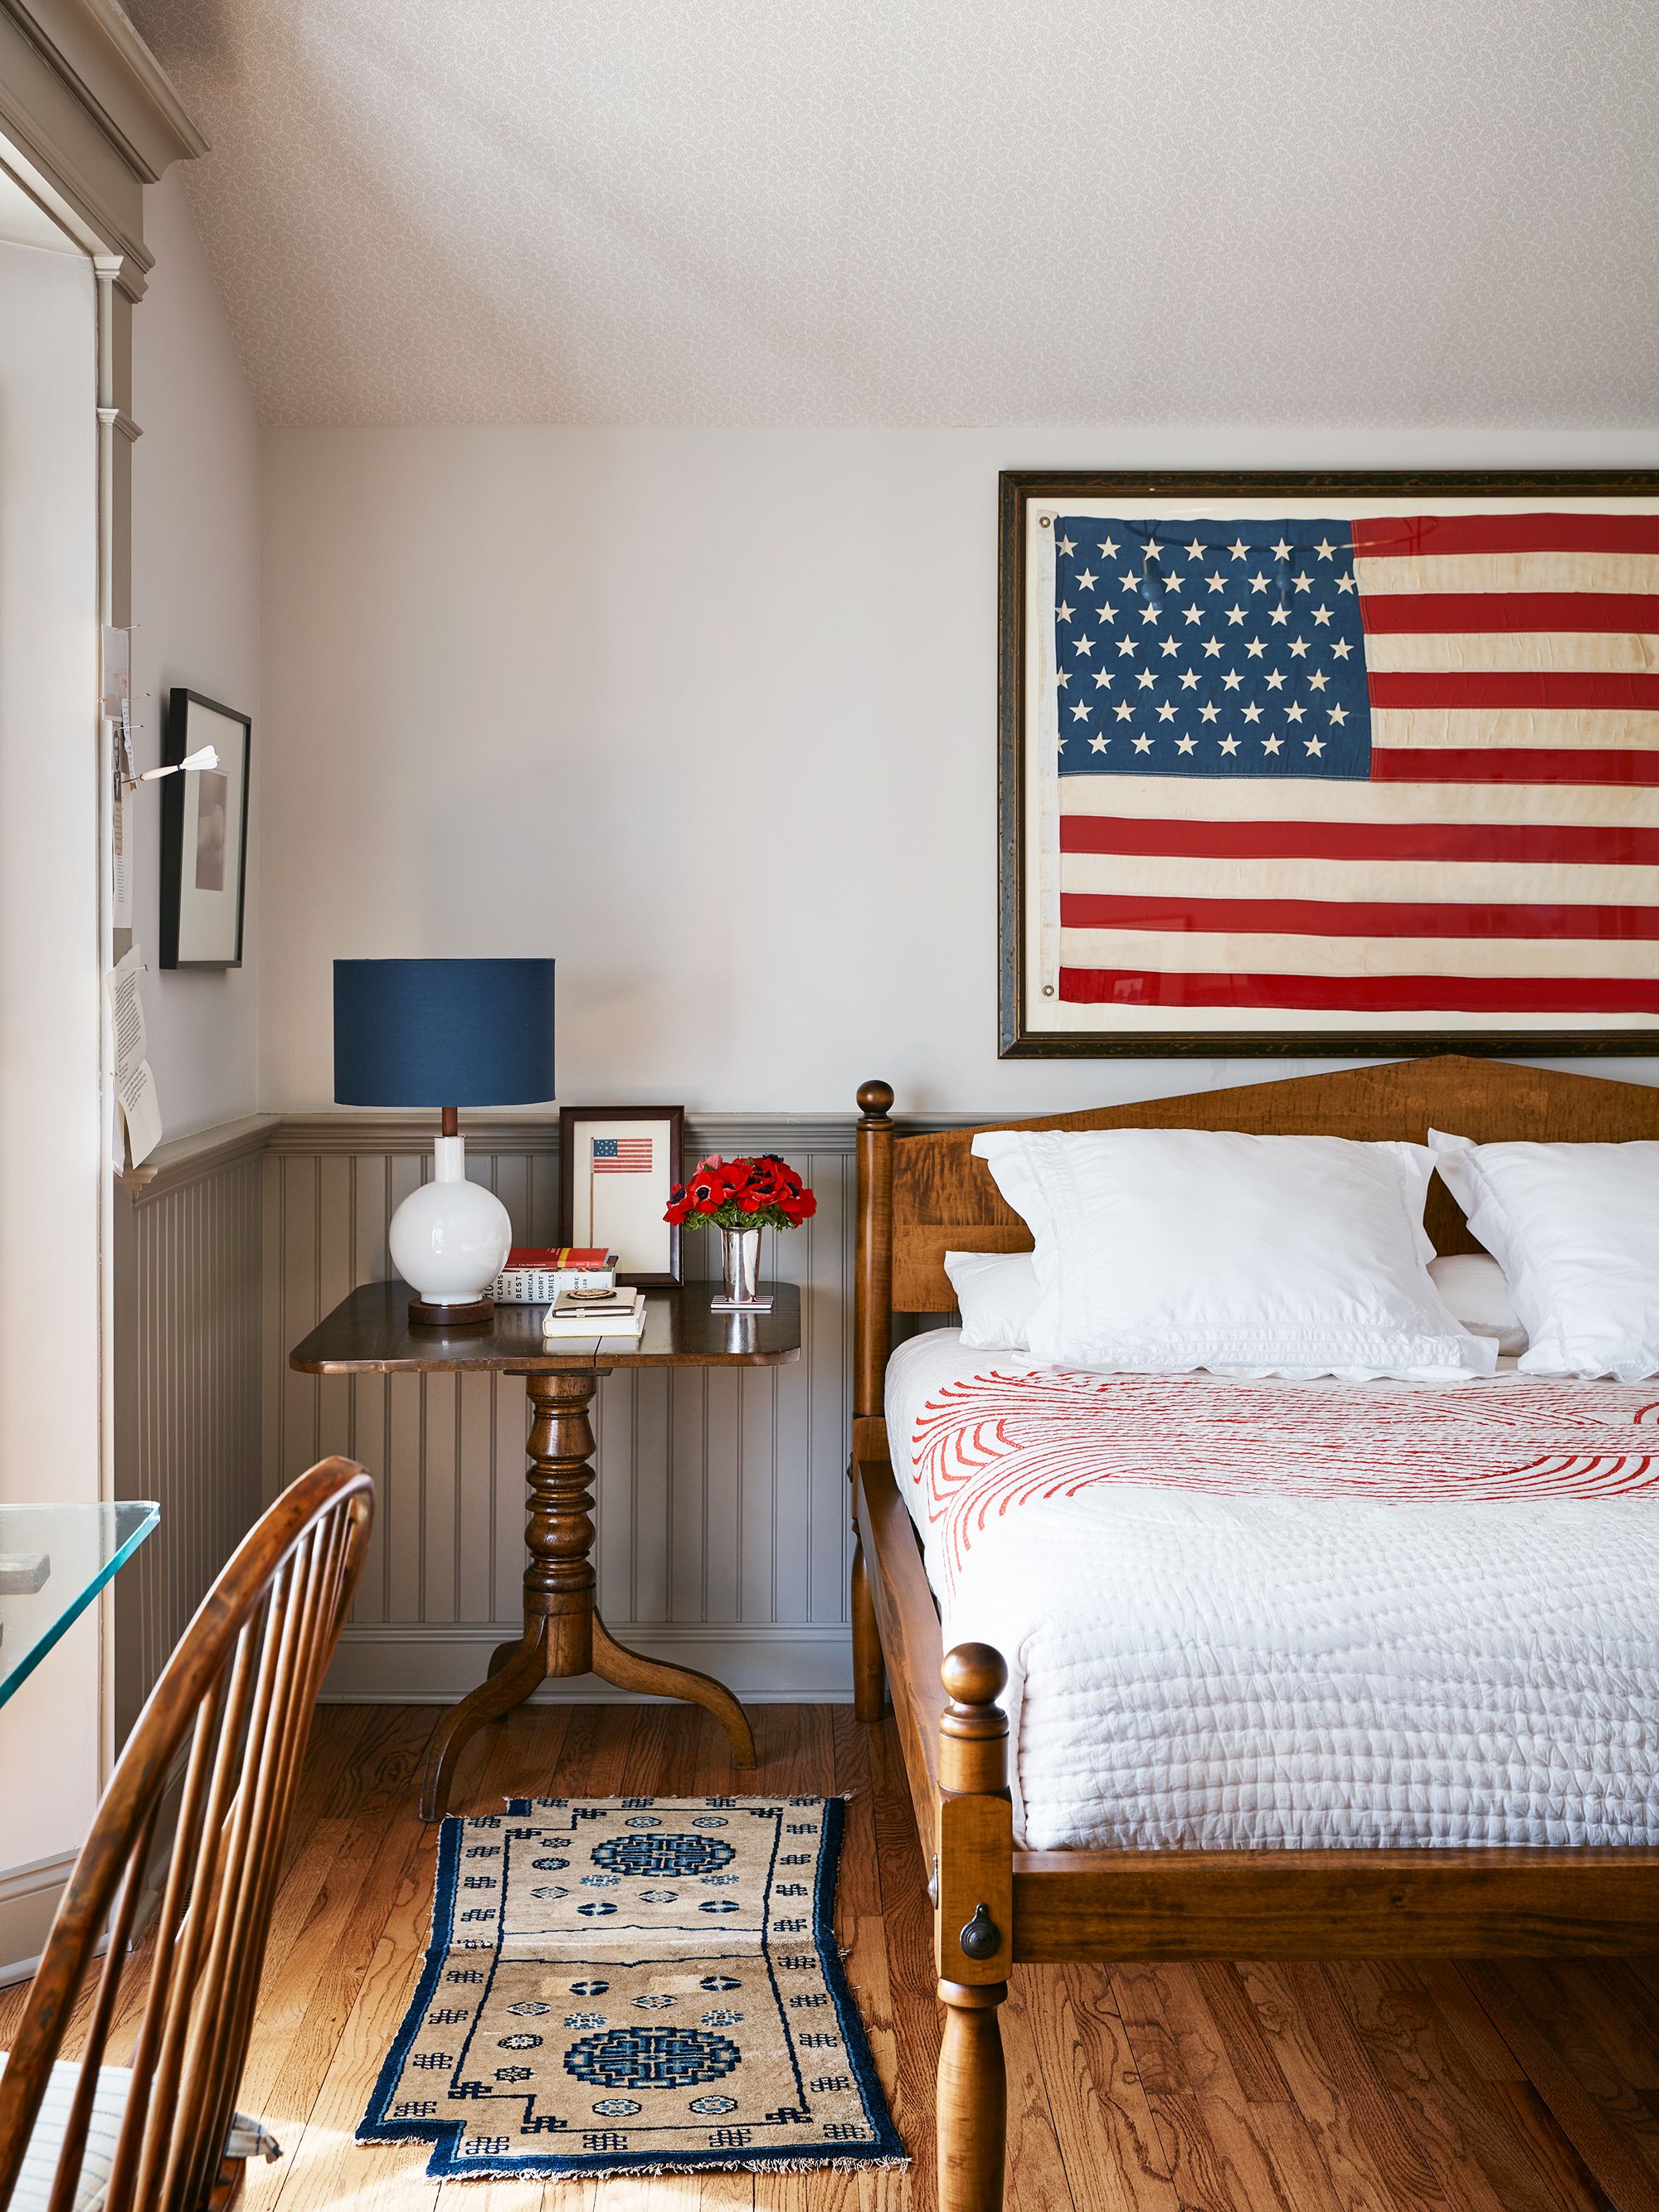 Napkin Star Spangled by Park Designs USA American Flag Patriotic 